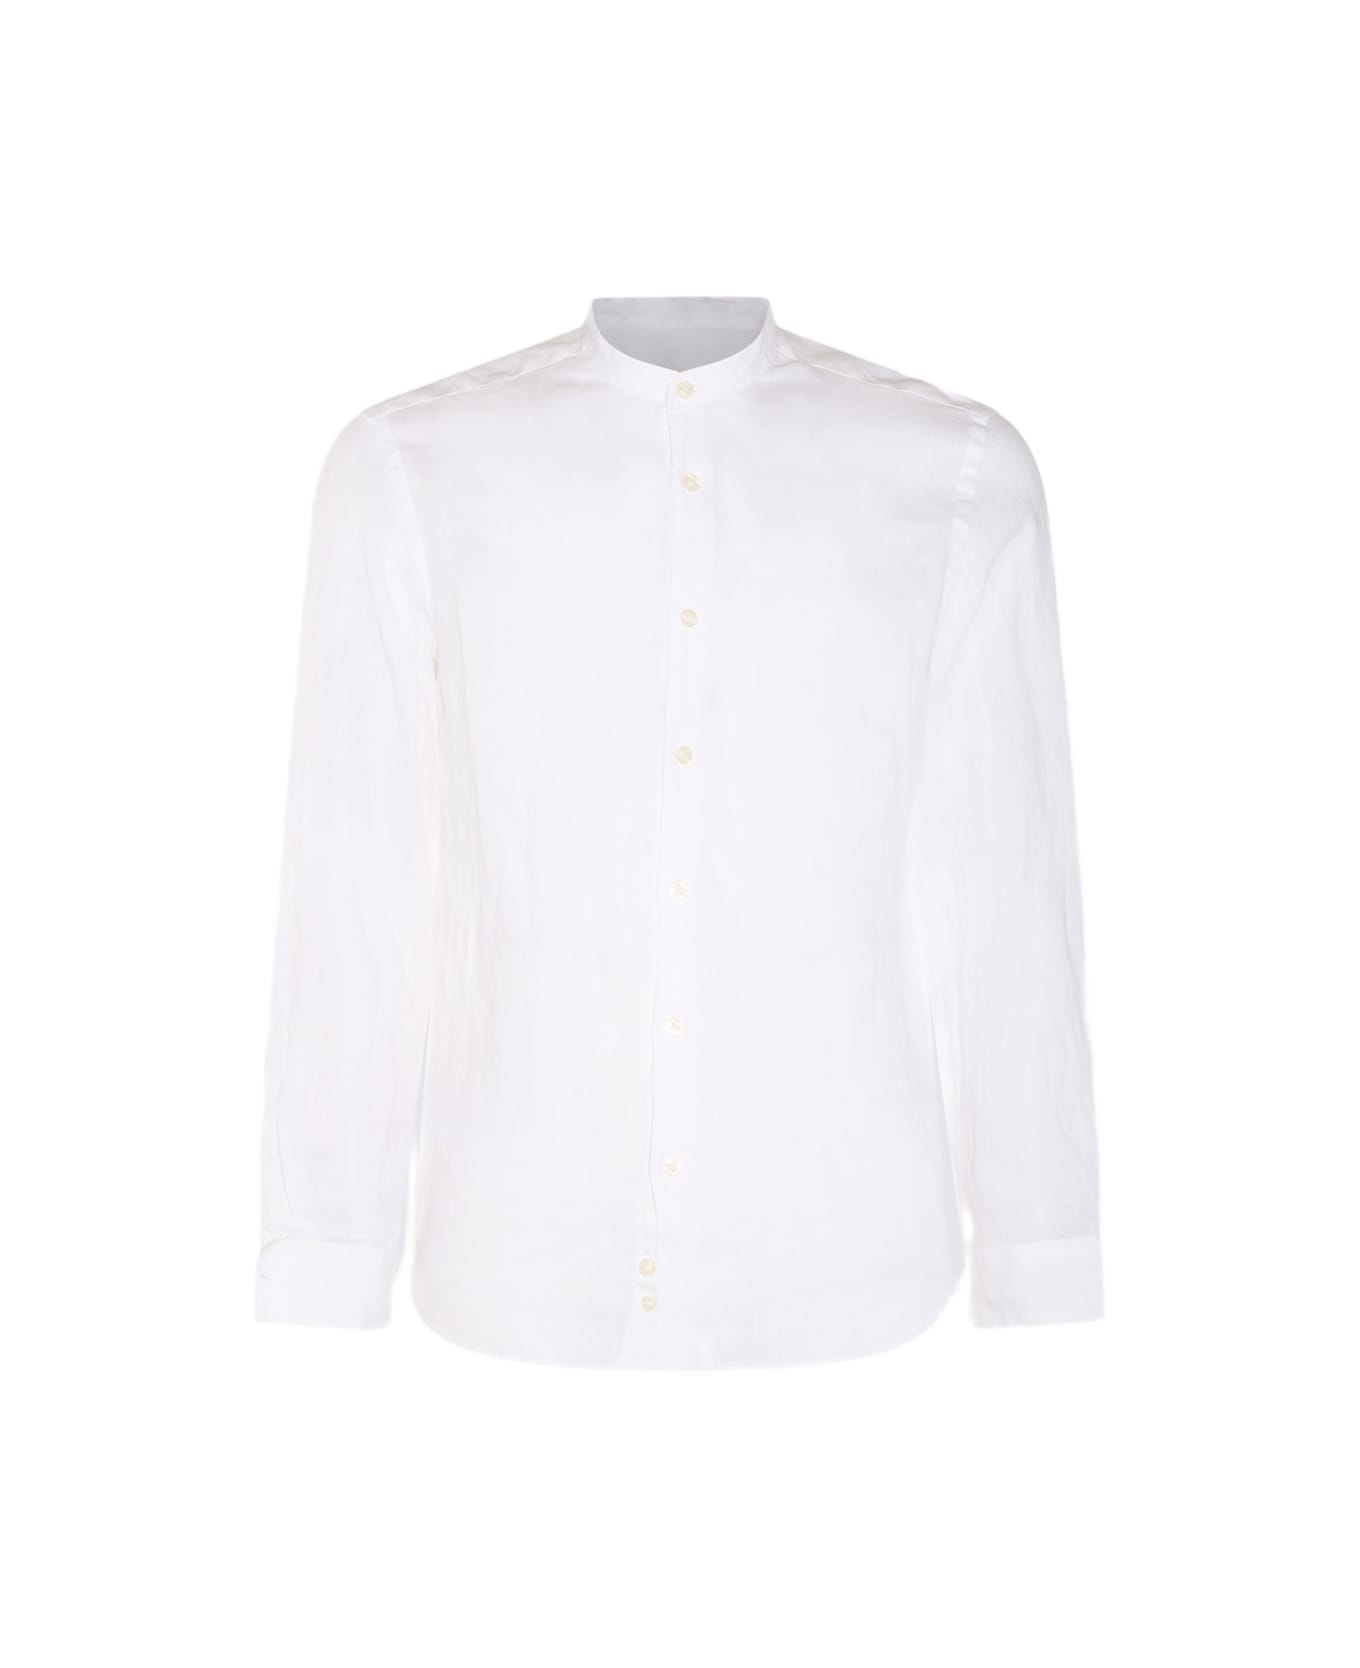 Altea White Linen Shirt - White